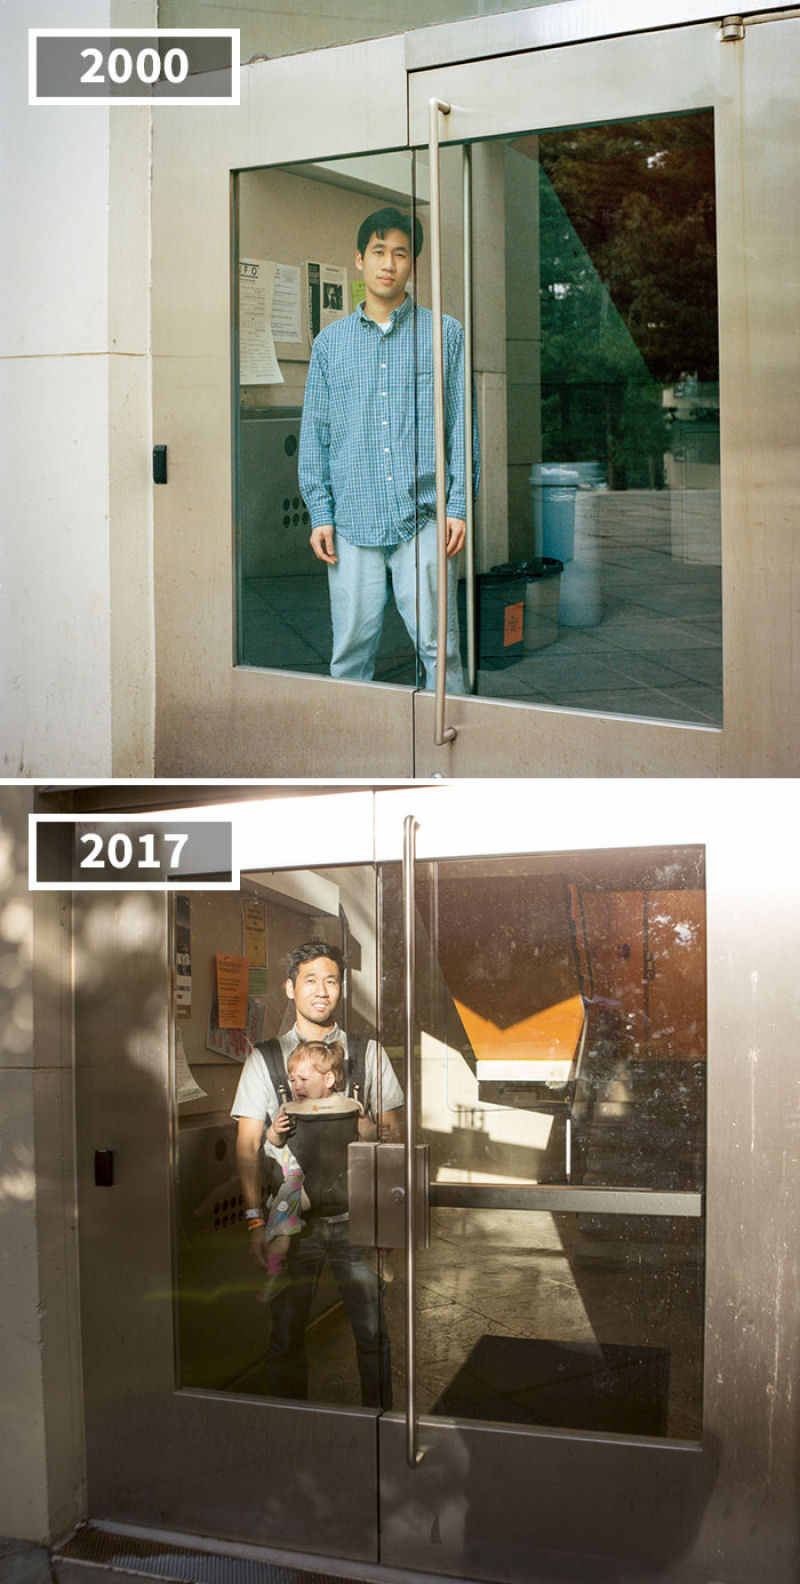 17 anos separam as fotos de antes e depois dos amigos desta fotgrafa 05